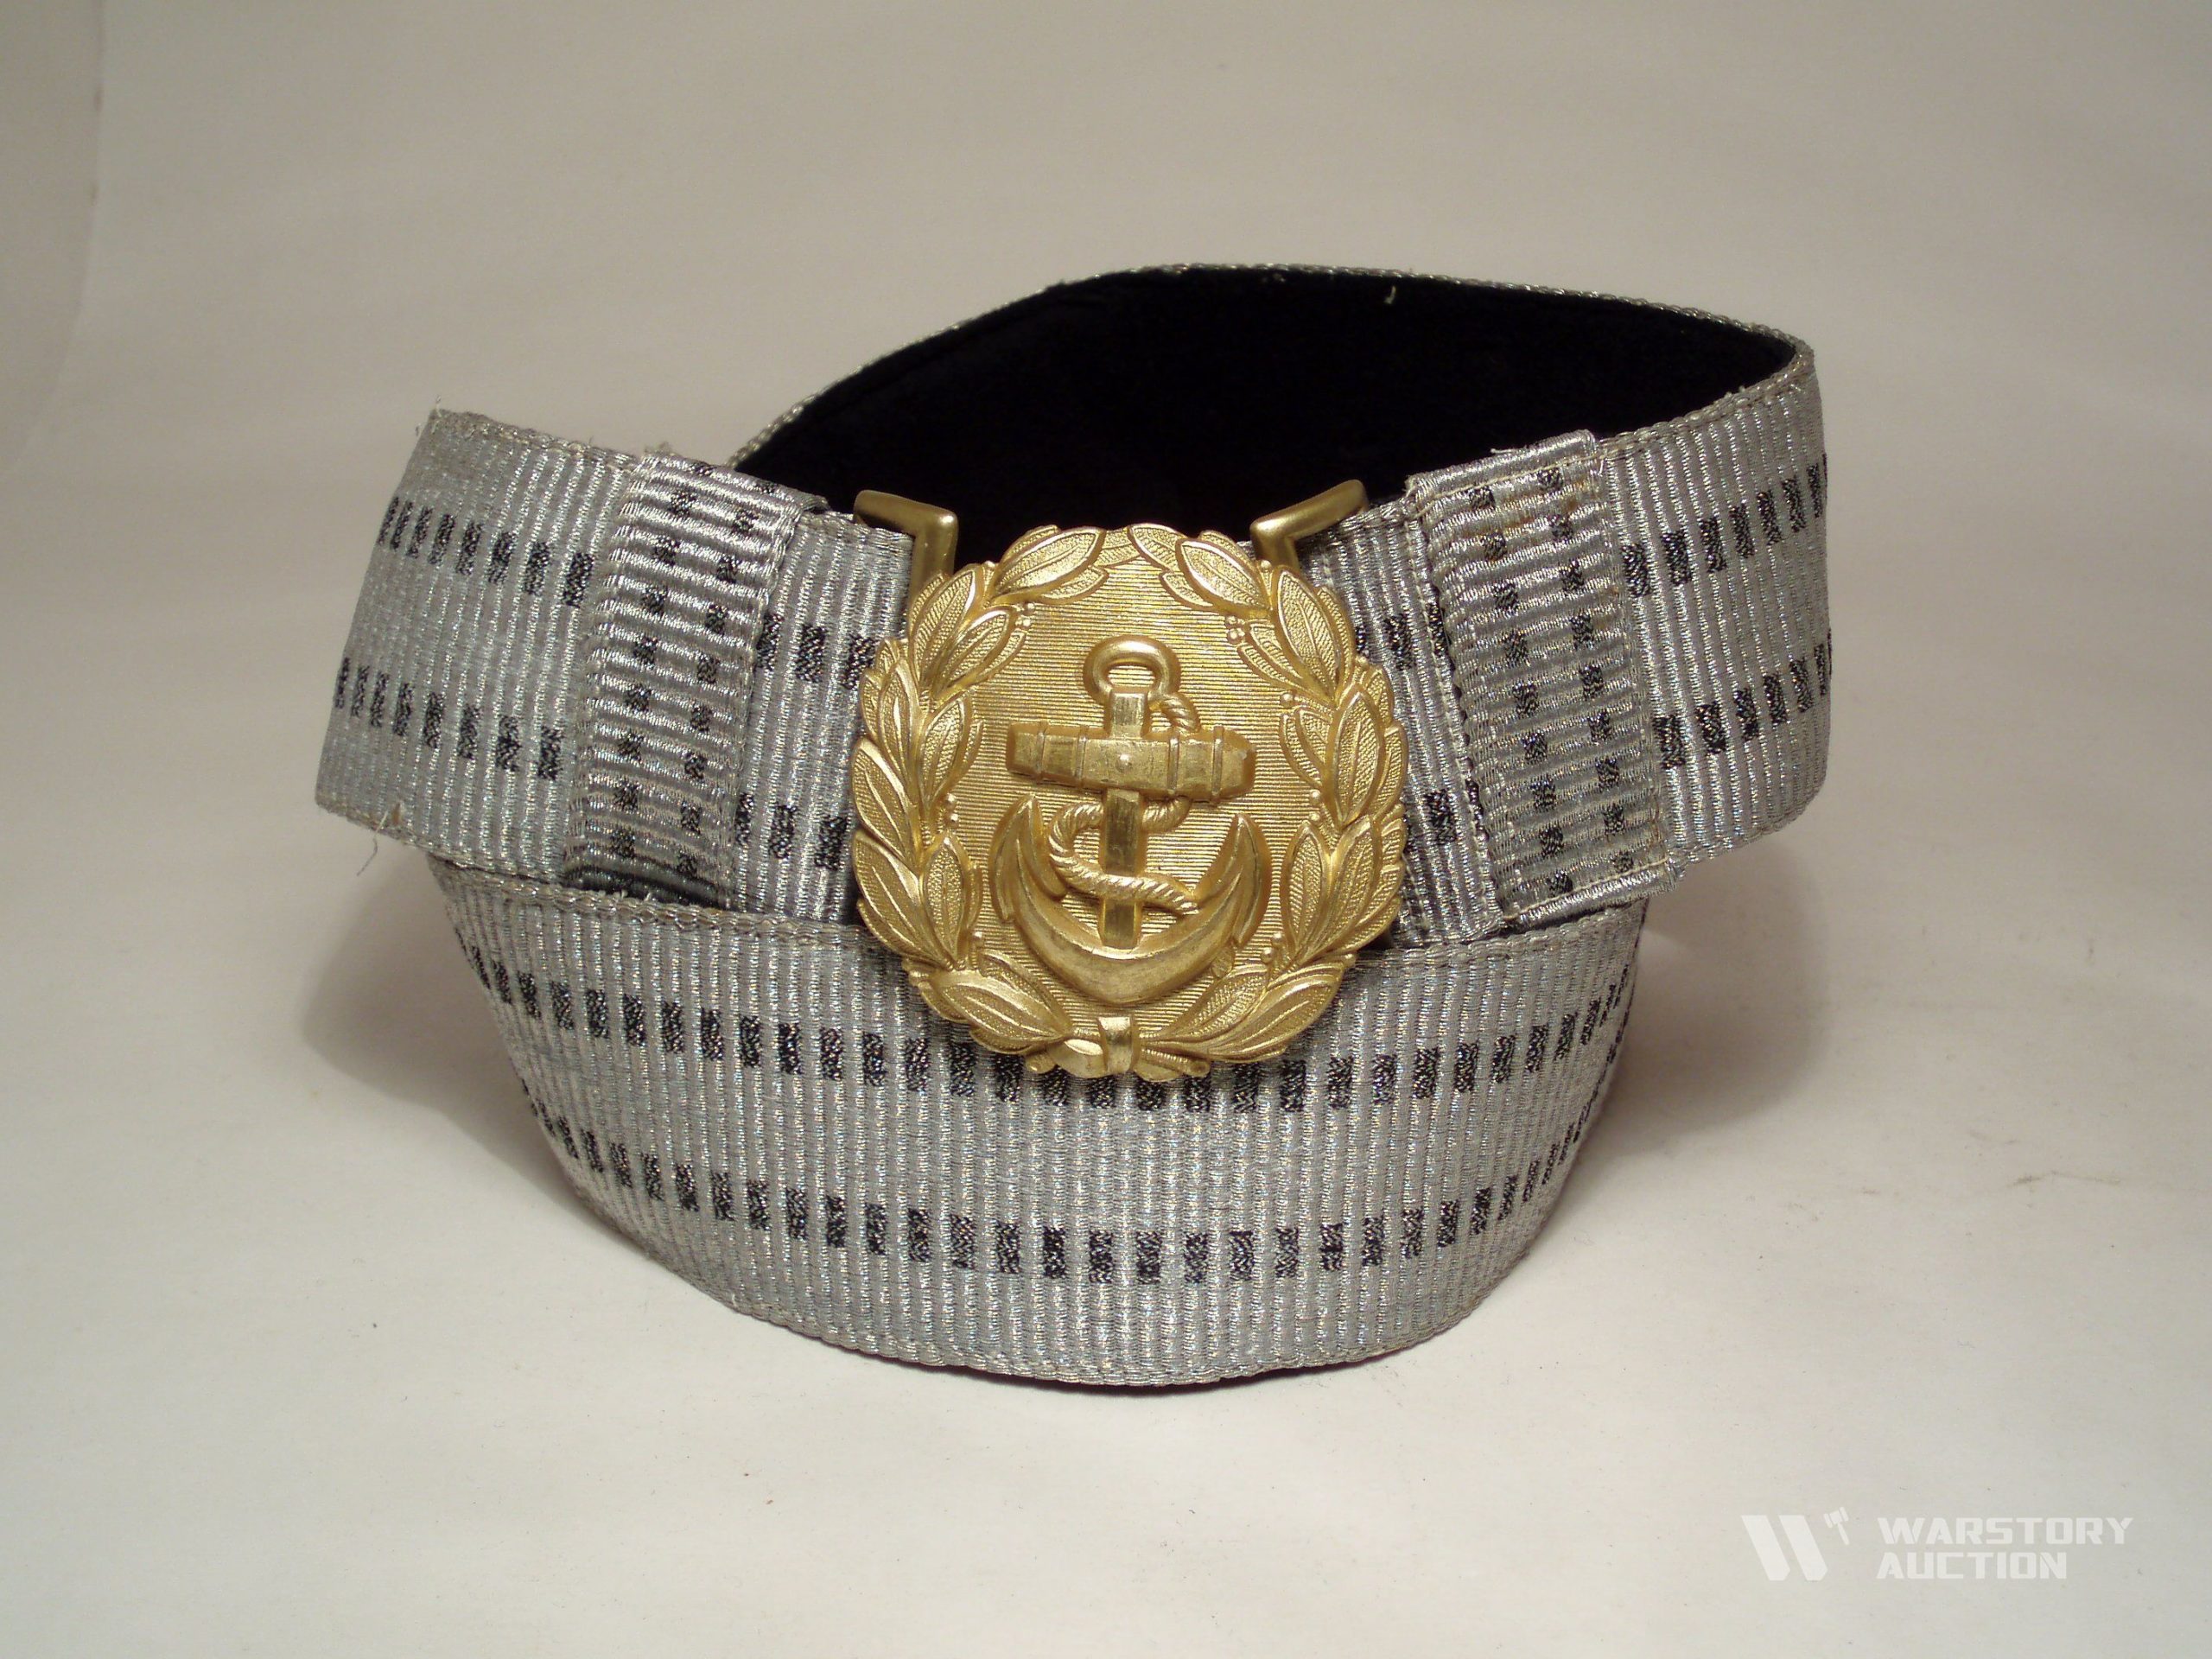 Ремень к парадной униформе офицера,адмирала Кригсмарине, с кольцами для подвеса кортика.